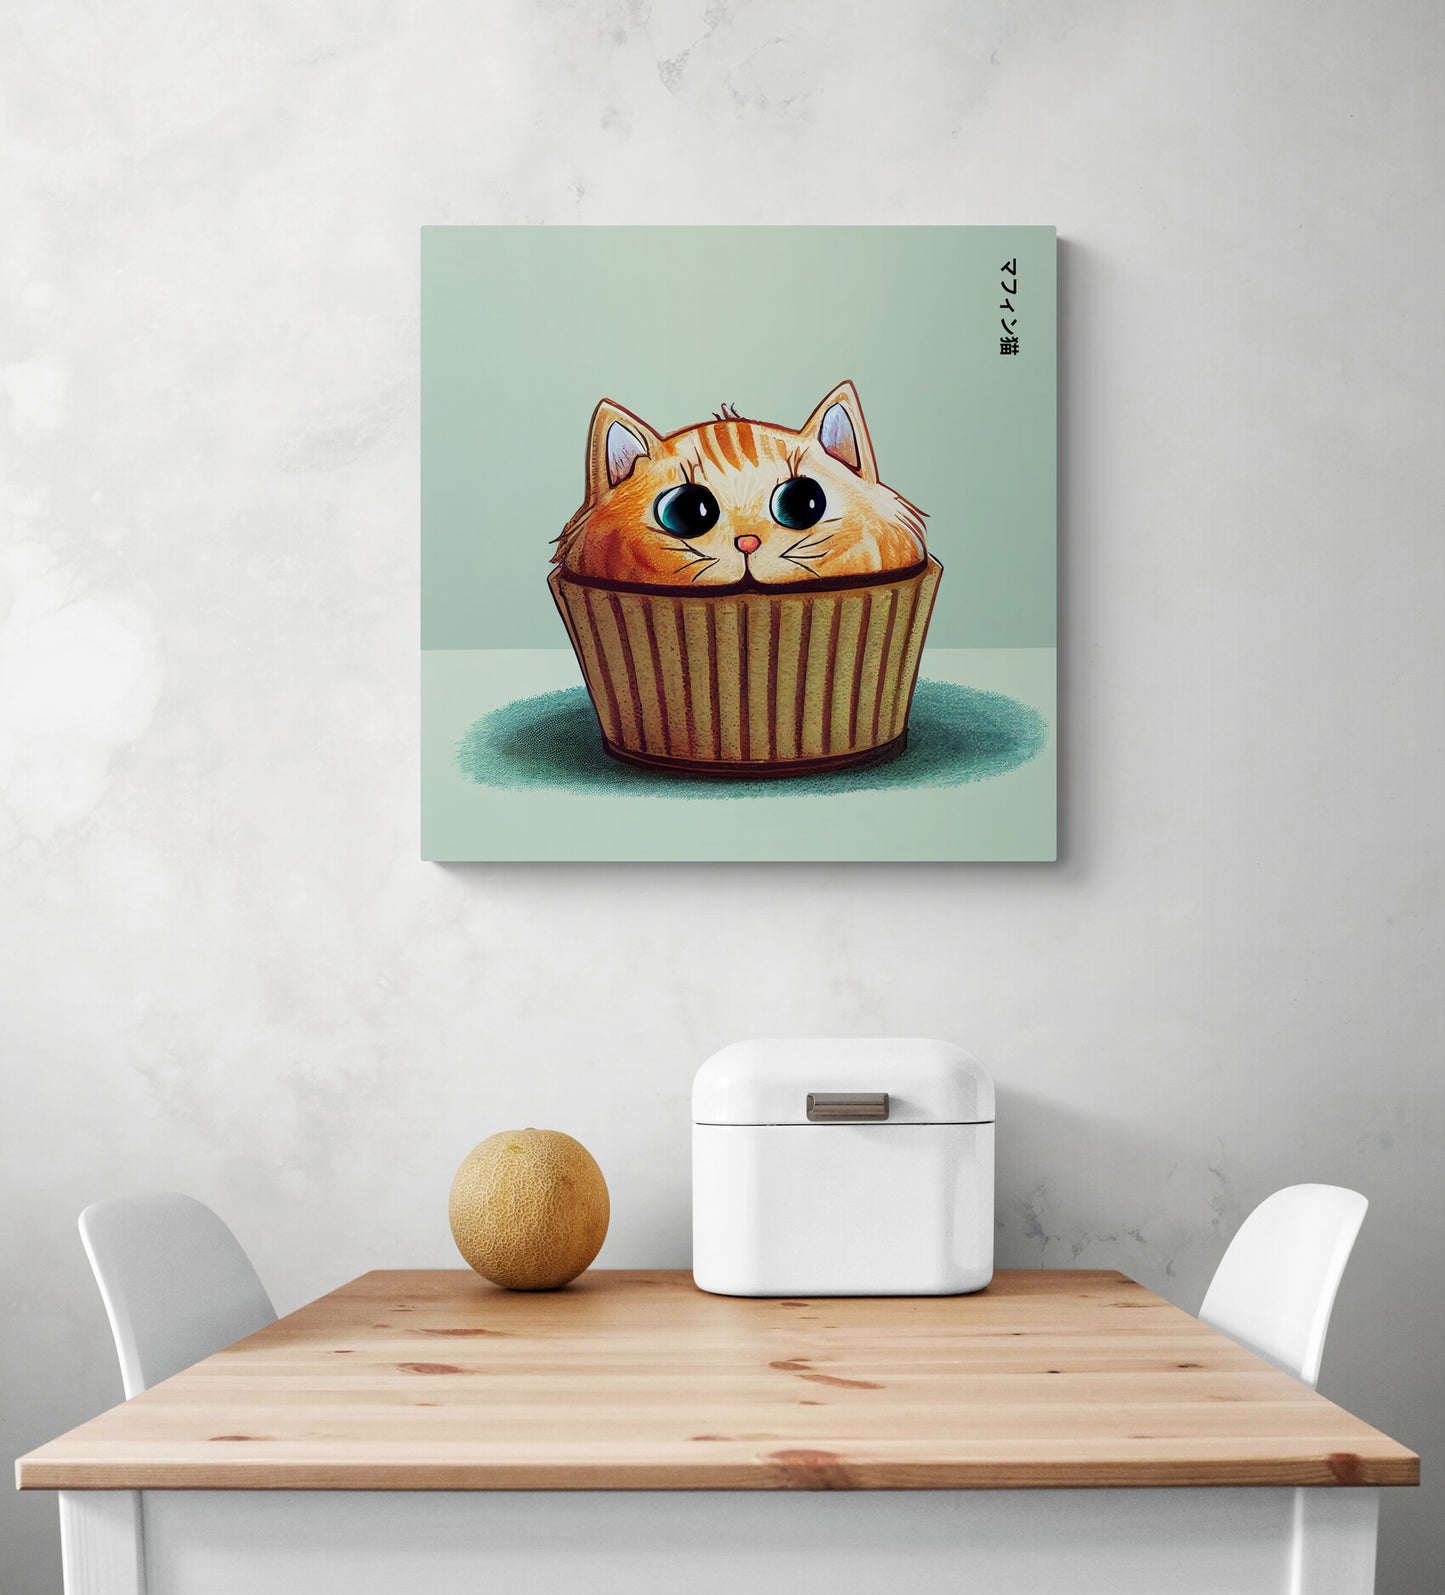 Ce cadre pêle mêle, de taille moyenne, posé sur le mur d'une cuisine s'amuse à fusionner un muffin et un chat. La crème est remplacée par la tête d'un chat mignon et roux aux couleurs orange. Posé sur son moule marron, aux grands yeux rond, il est plein de vie et de personnalité. Le tout sur un fond bleu